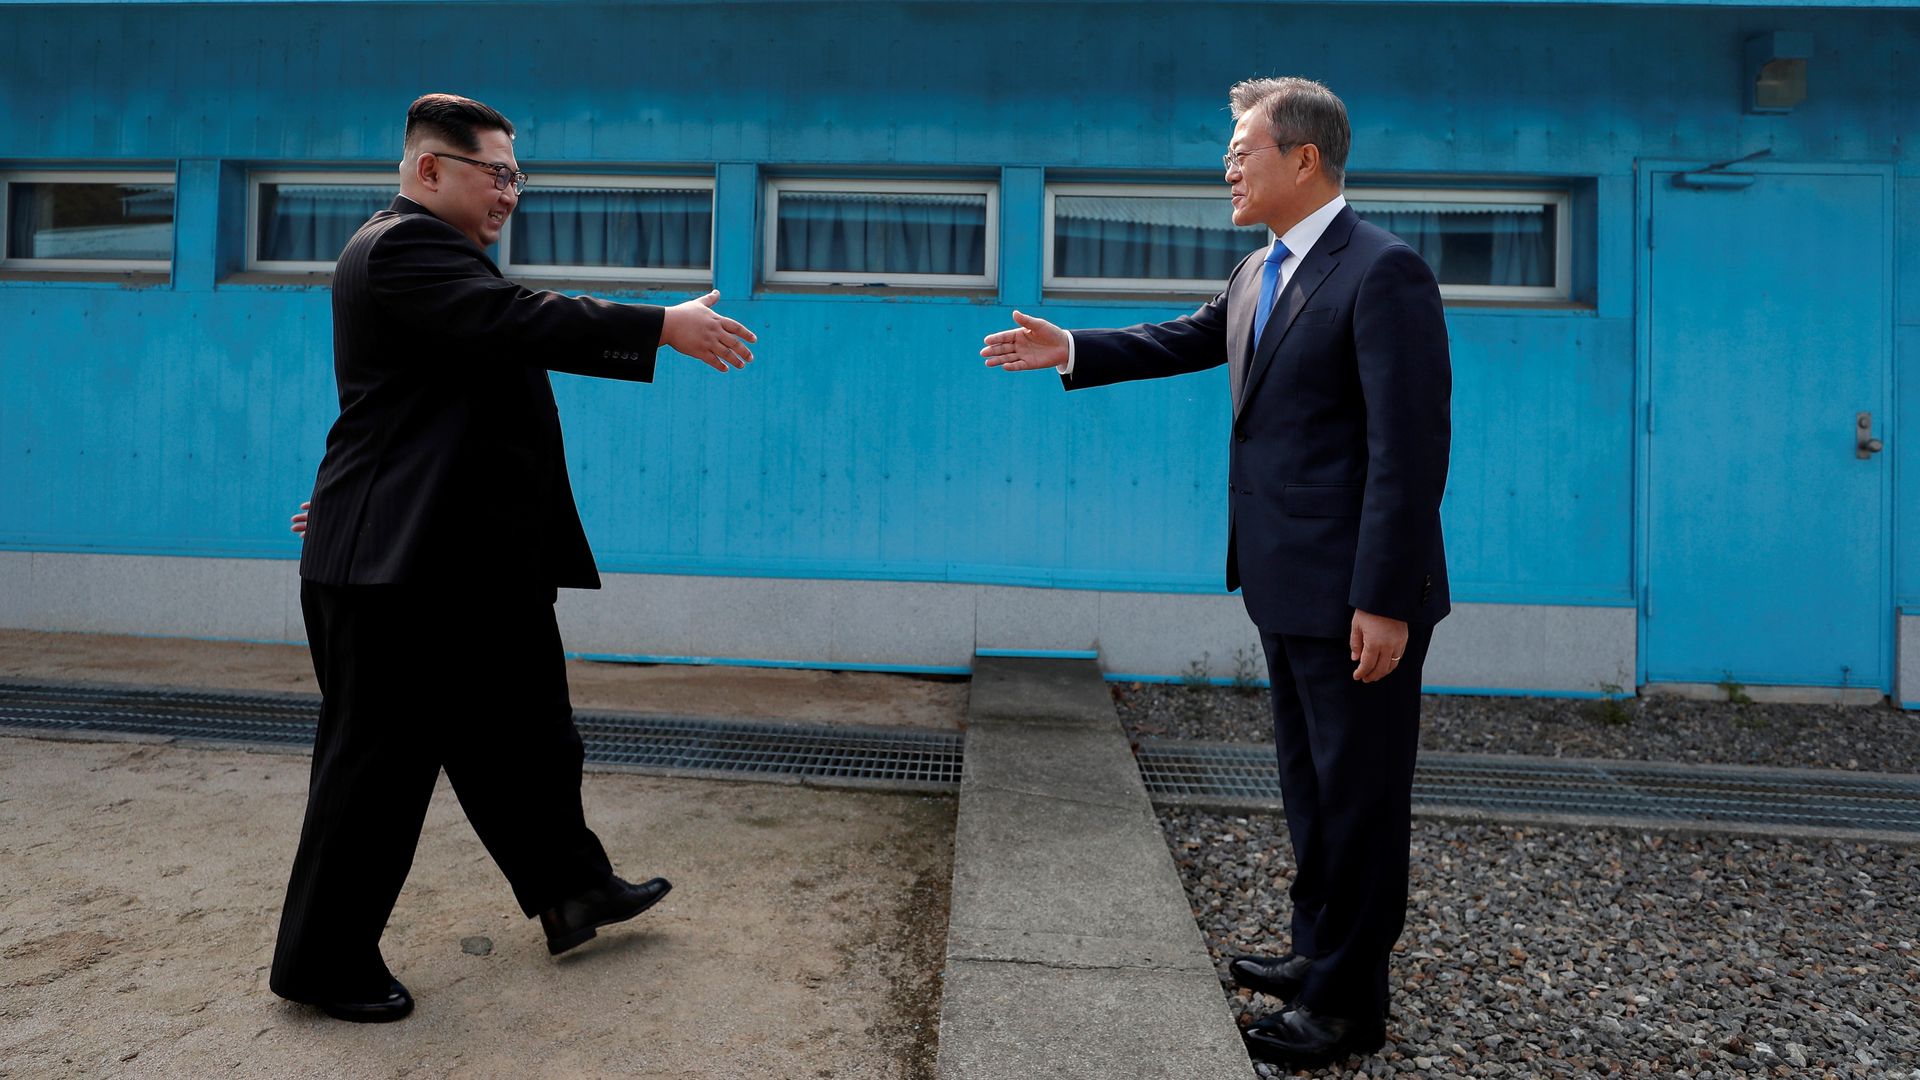 Hand shake at DMZ